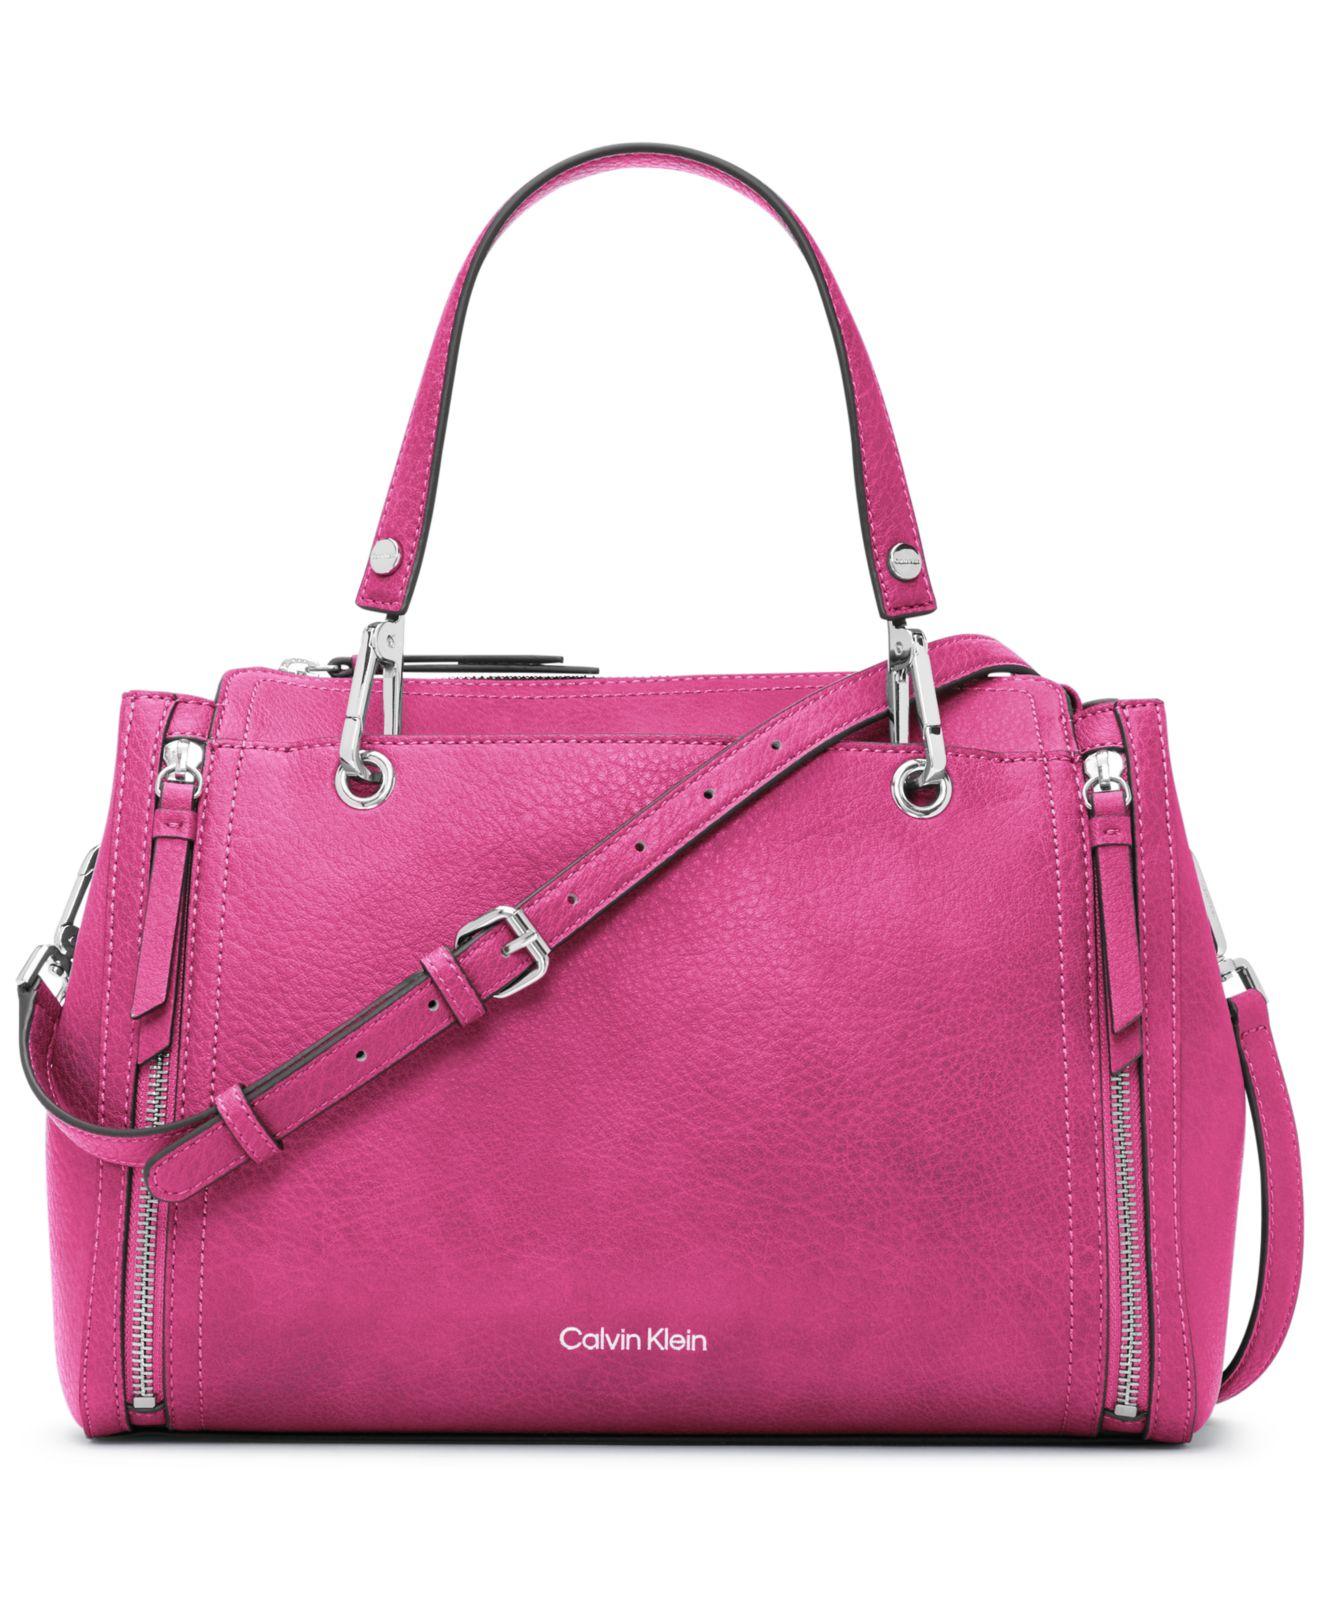 Calvin Klein Reyna Satchel Bag in Pink | Lyst